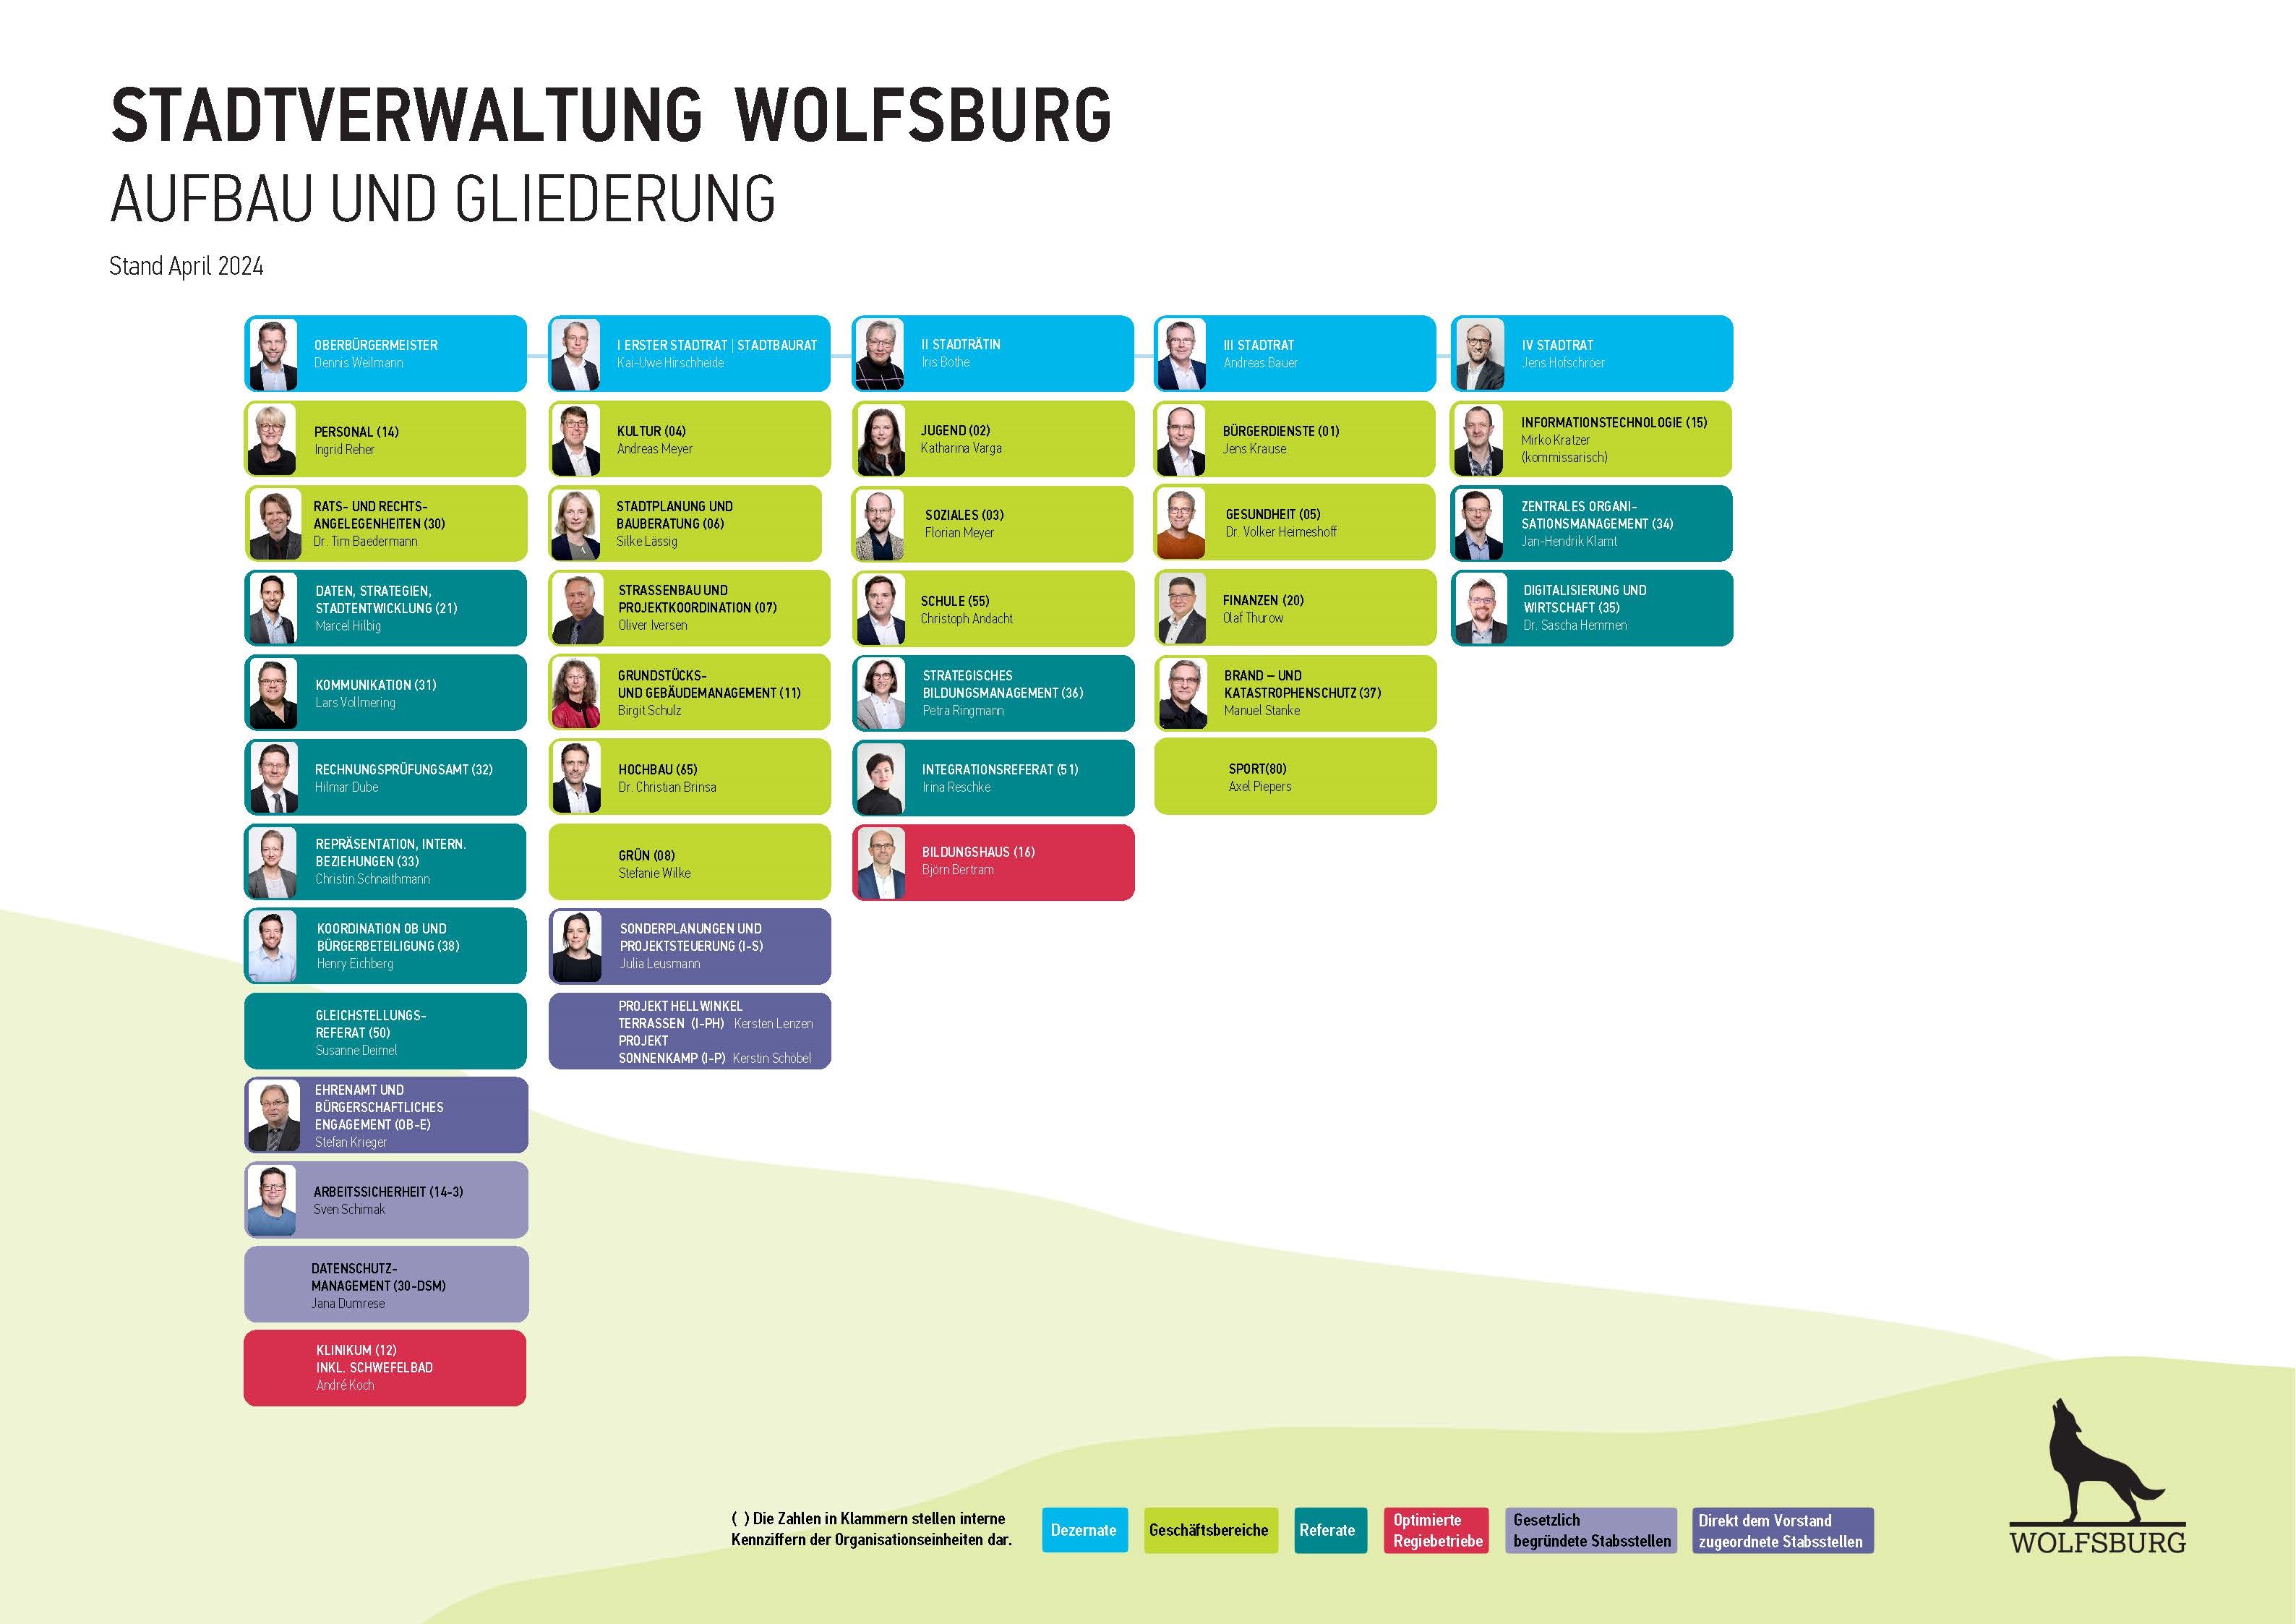 Organigramm der Stadtverwaltung Wolfsburg - Aufbau und Gliederung